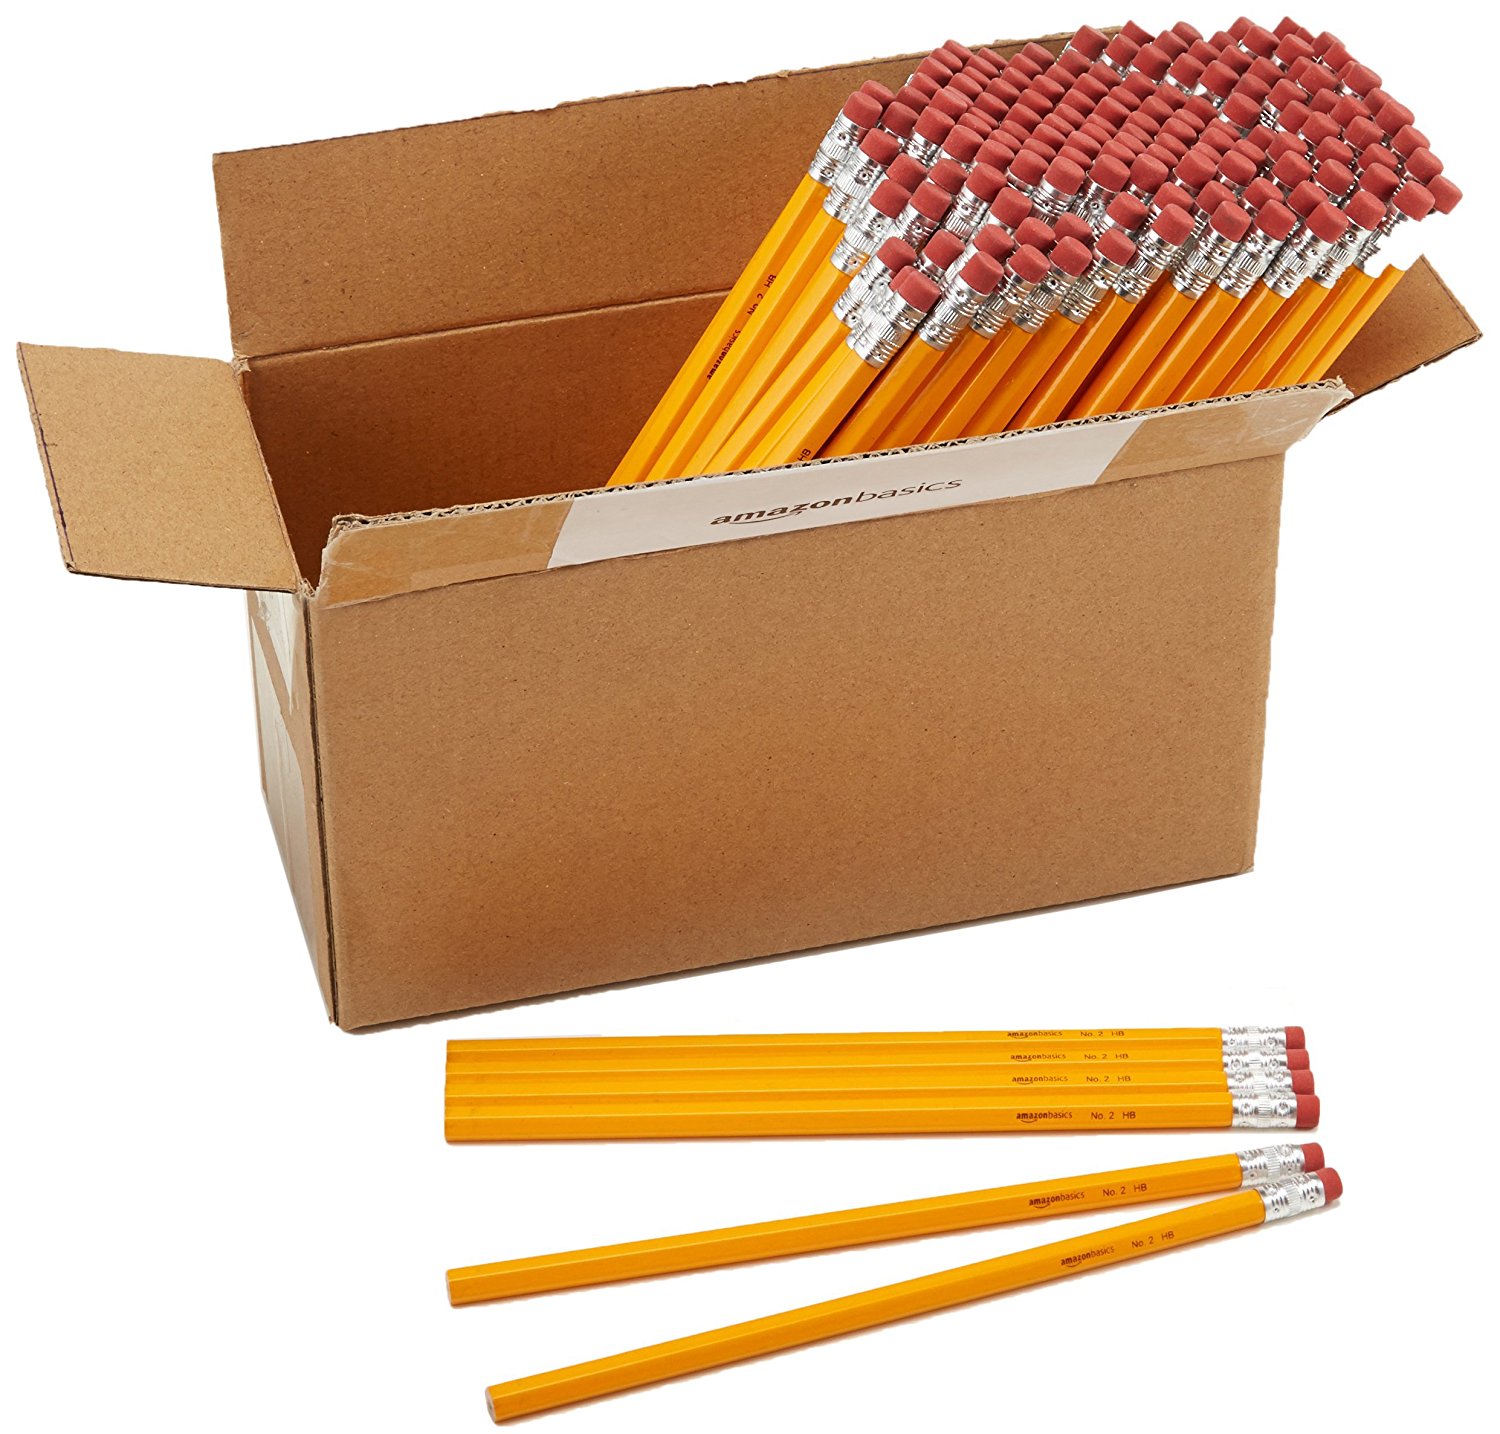 A box of 144 pencils.